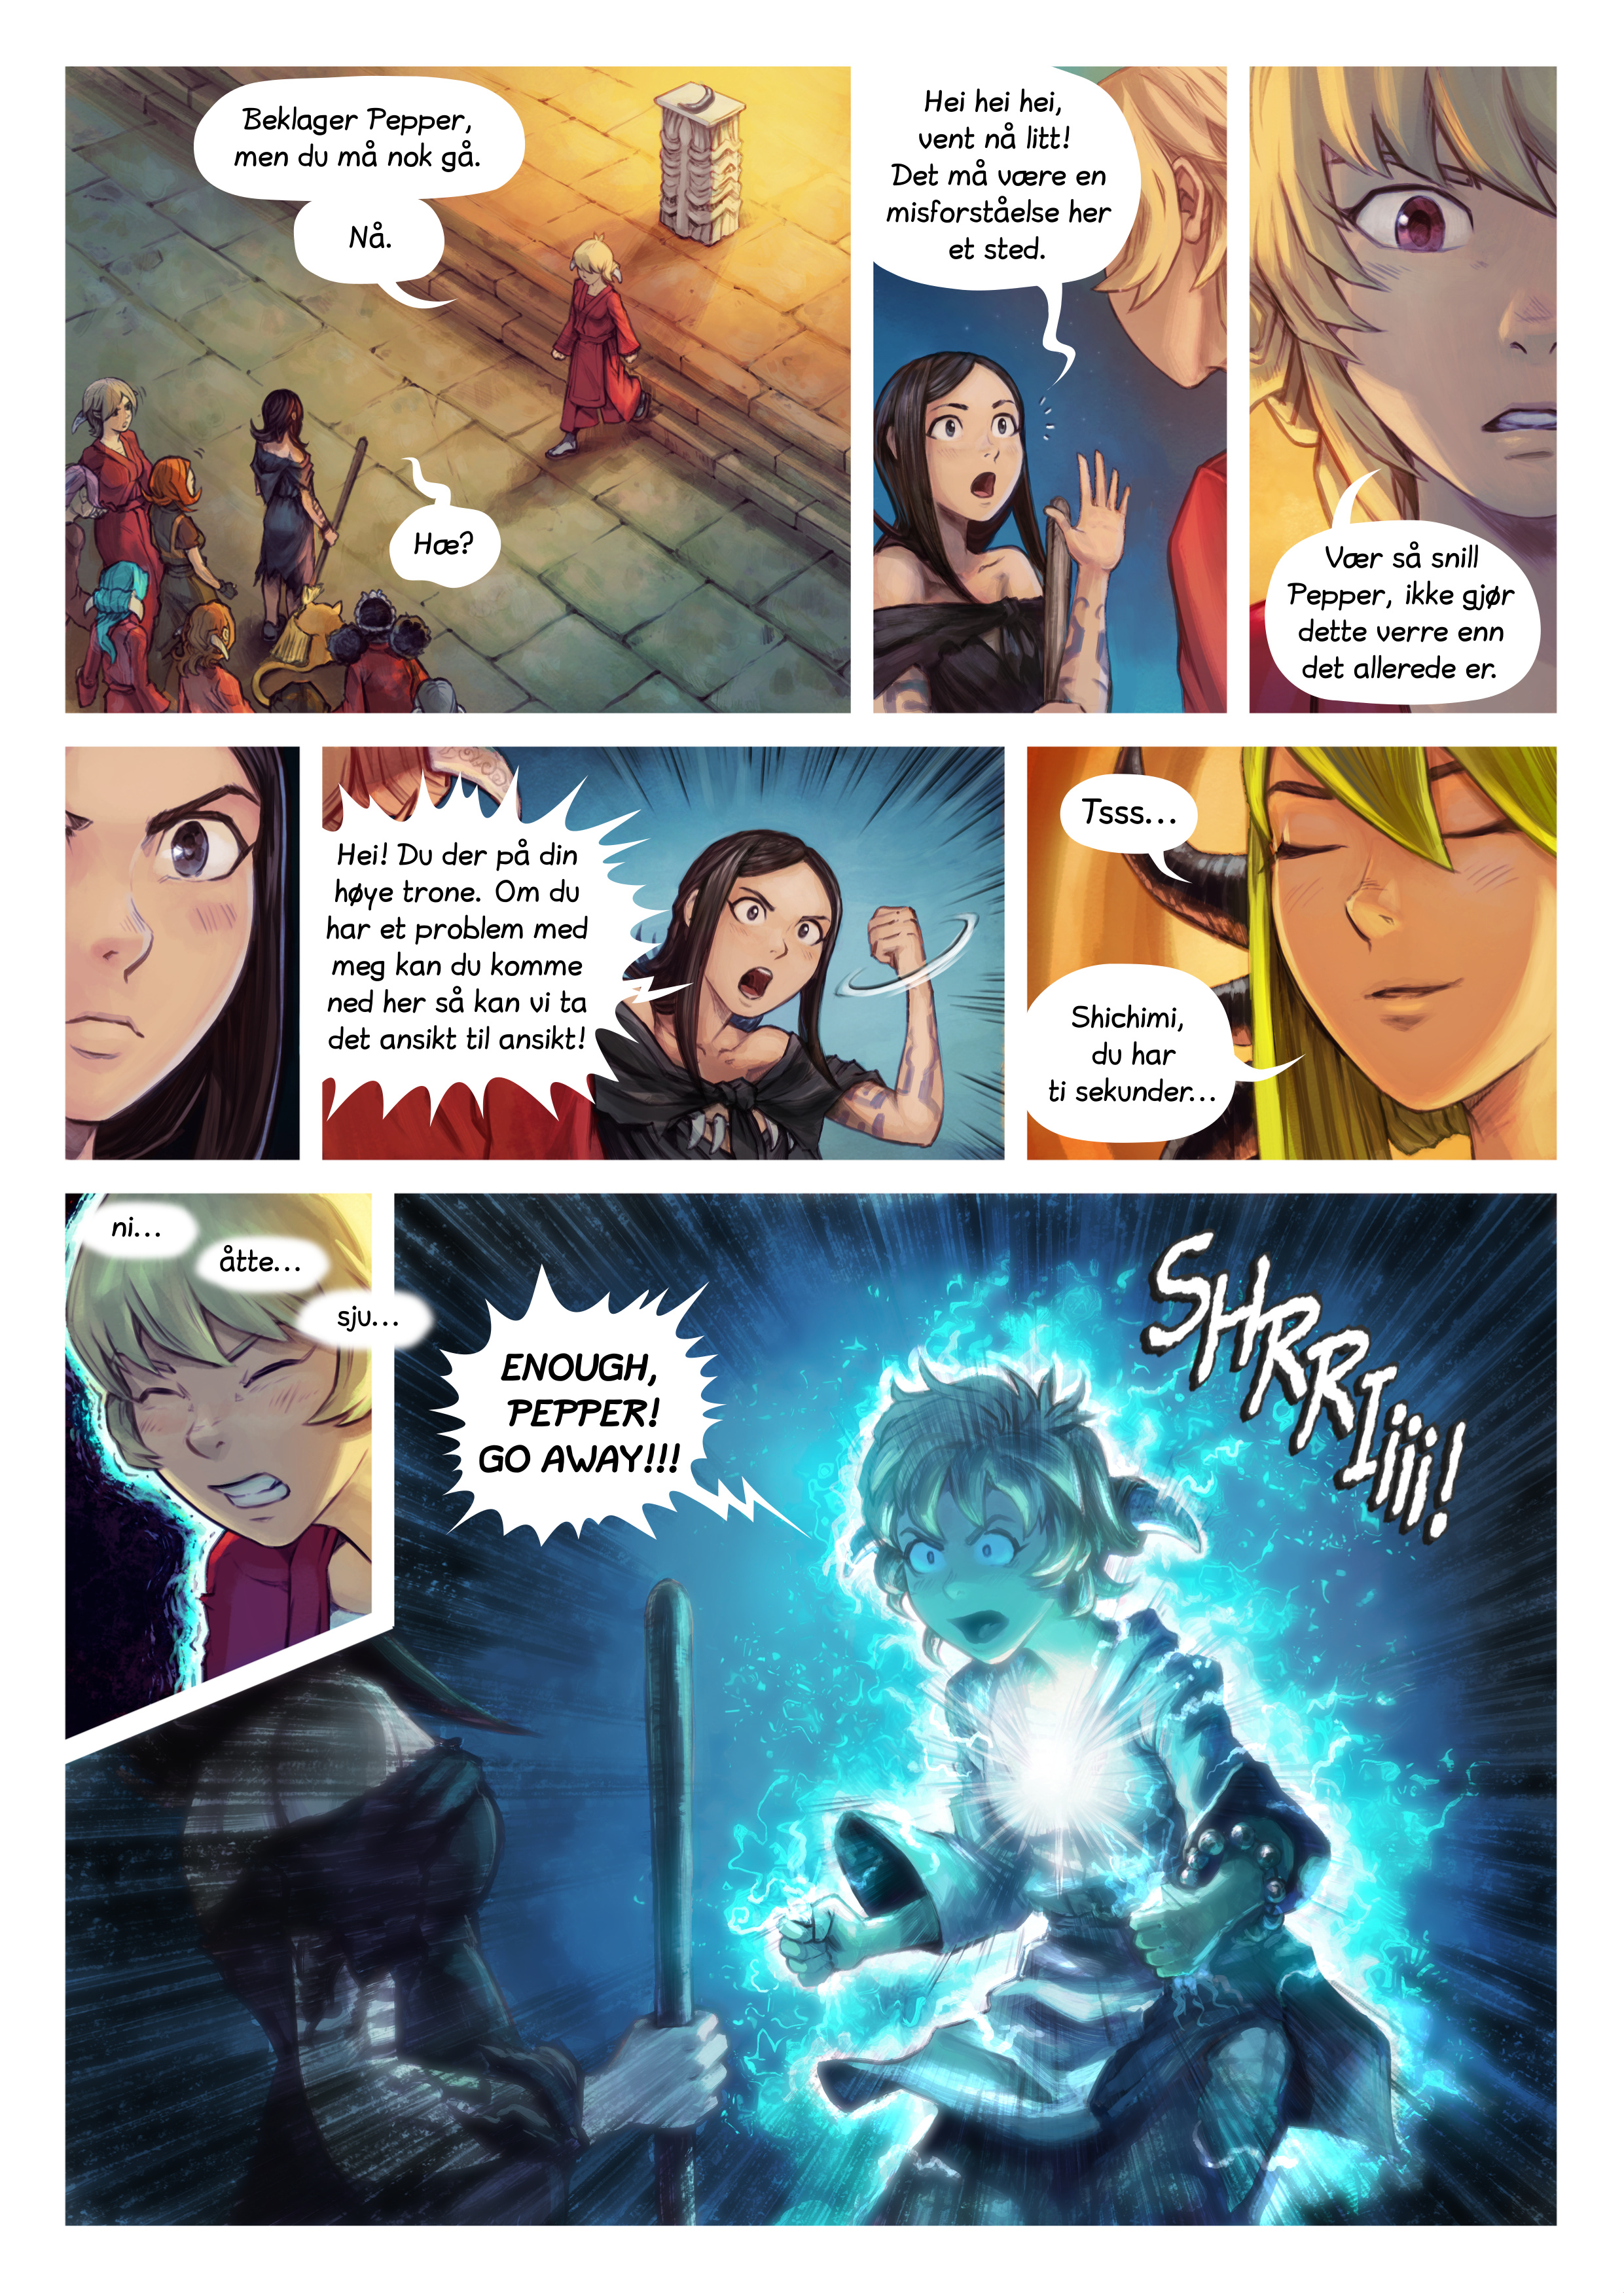 Episode 34: Shichimi slås til ridder, Page 5